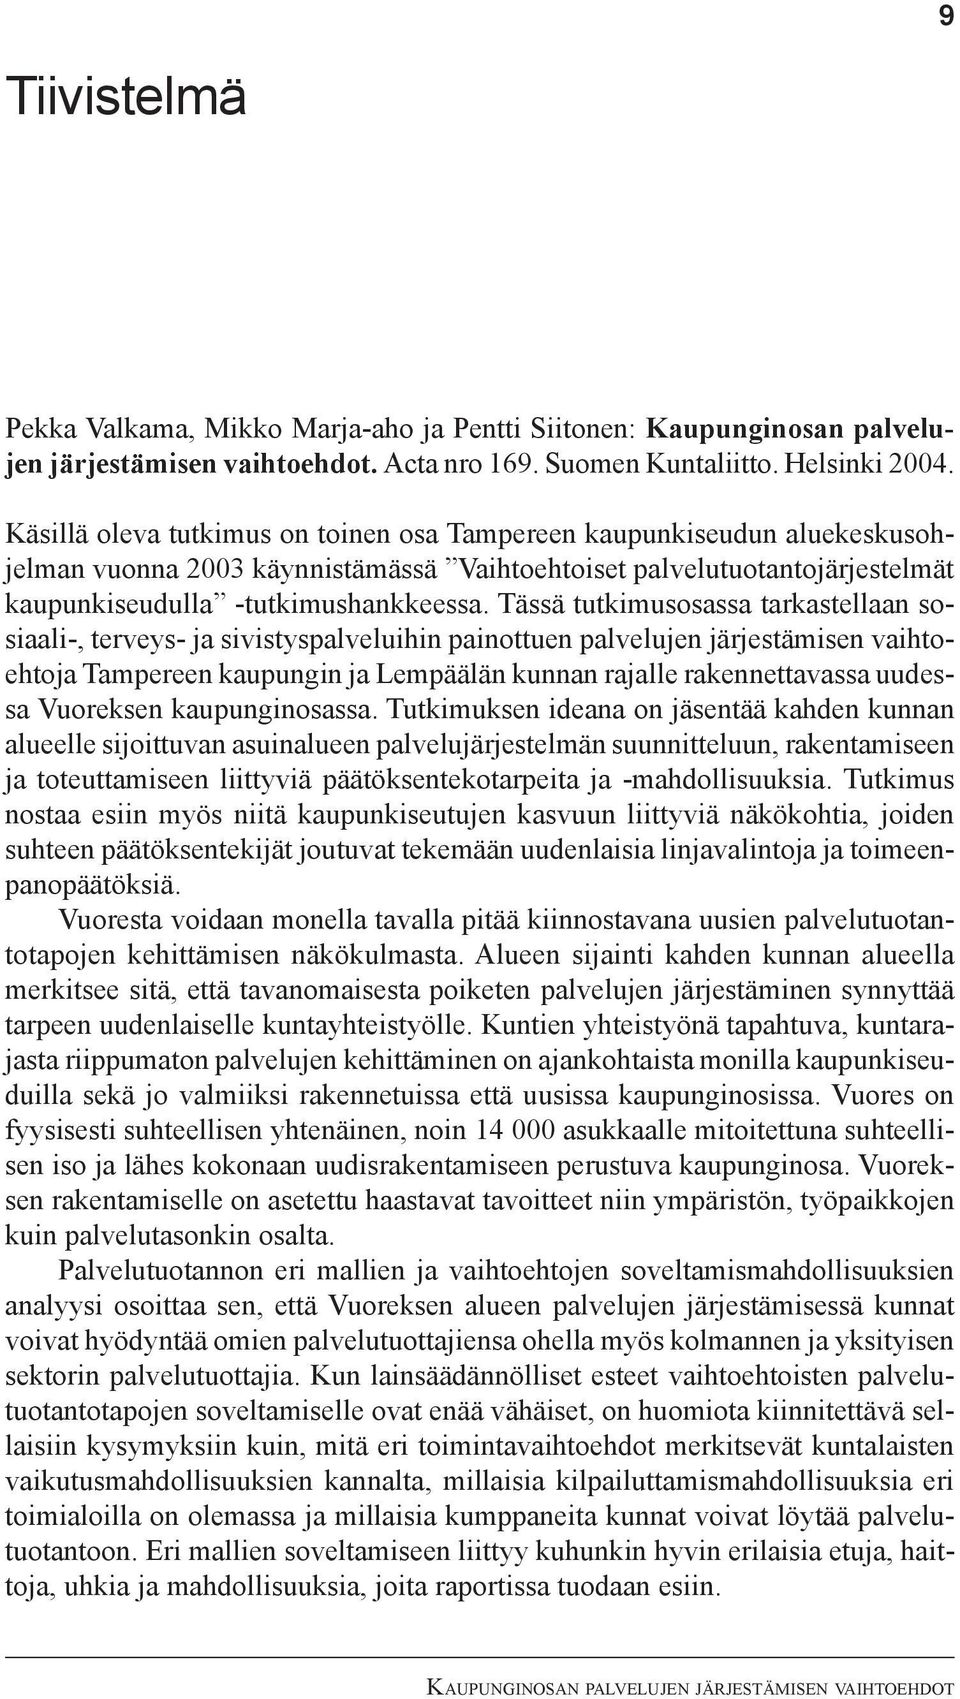 Tässä tutkimusosassa tarkastellaan sosiaali-, terveys- ja sivistyspalveluihin painottuen palvelujen järjestämisen vaihtoehtoja Tampereen kaupungin ja Lempäälän kunnan rajalle rakennettavassa uudessa